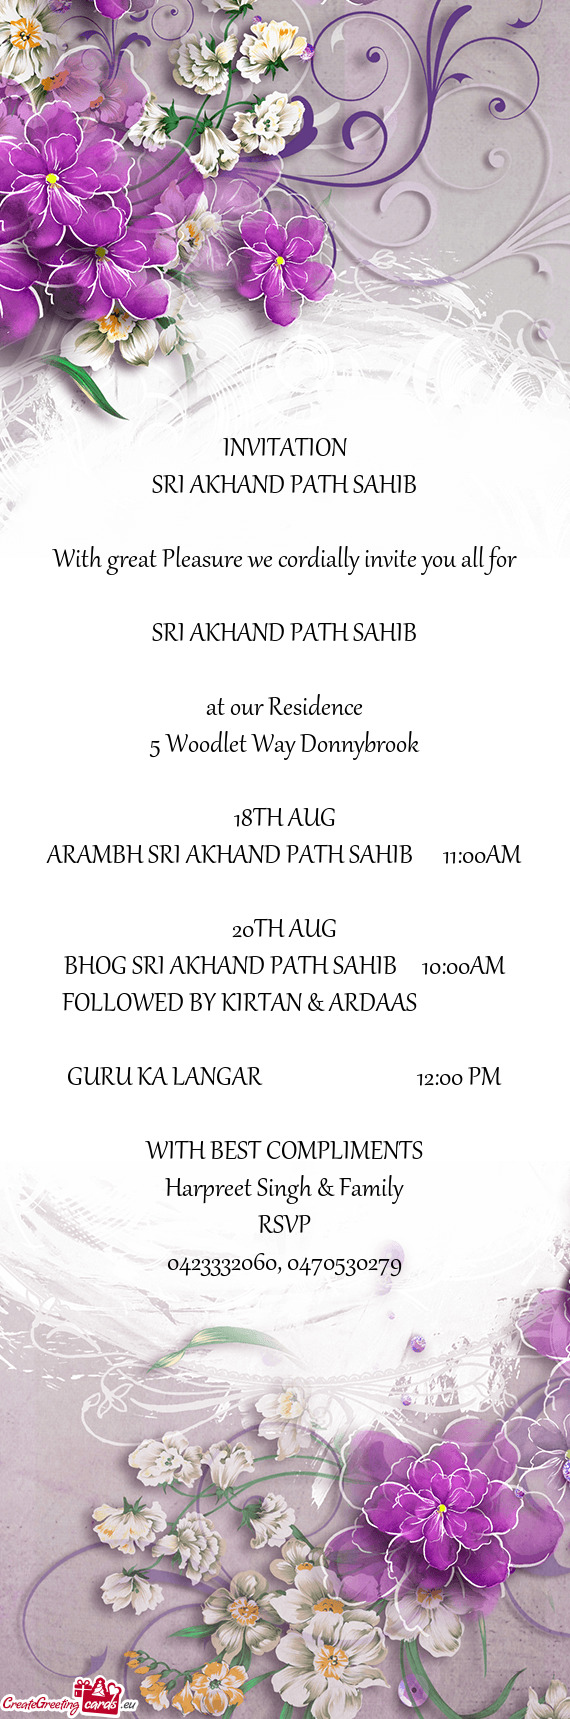 ARAMBH SRI AKHAND PATH SAHIB  11:00AM